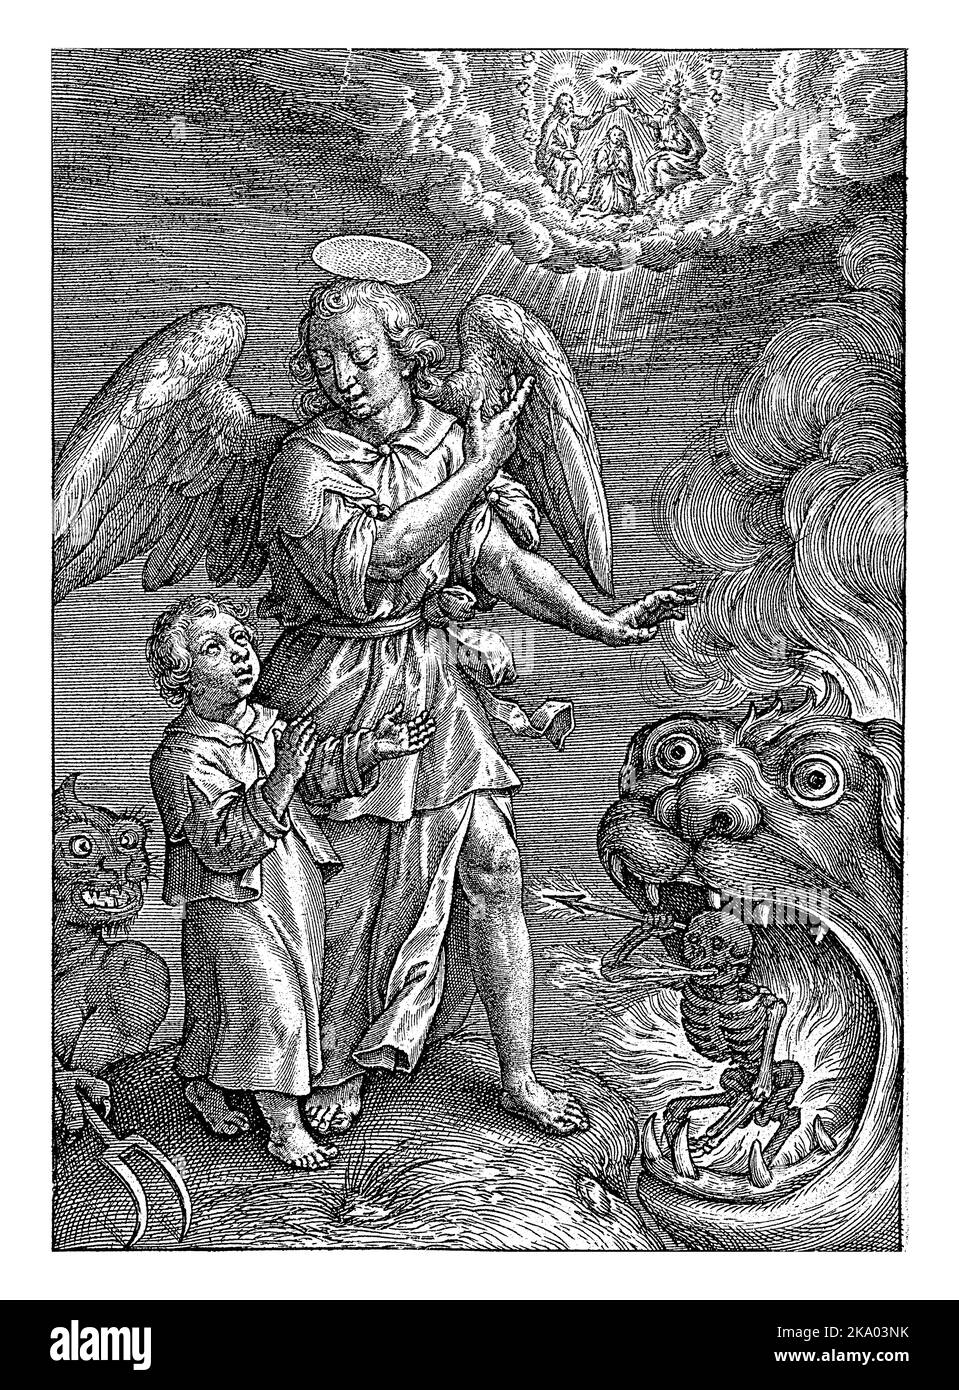 Enfant avec ange gardien, Hieronymus Wierix, 1563 -1619 Un enfant est protégé du diable et de la mort par son ange gardien. L'ange pointe le chi Banque D'Images